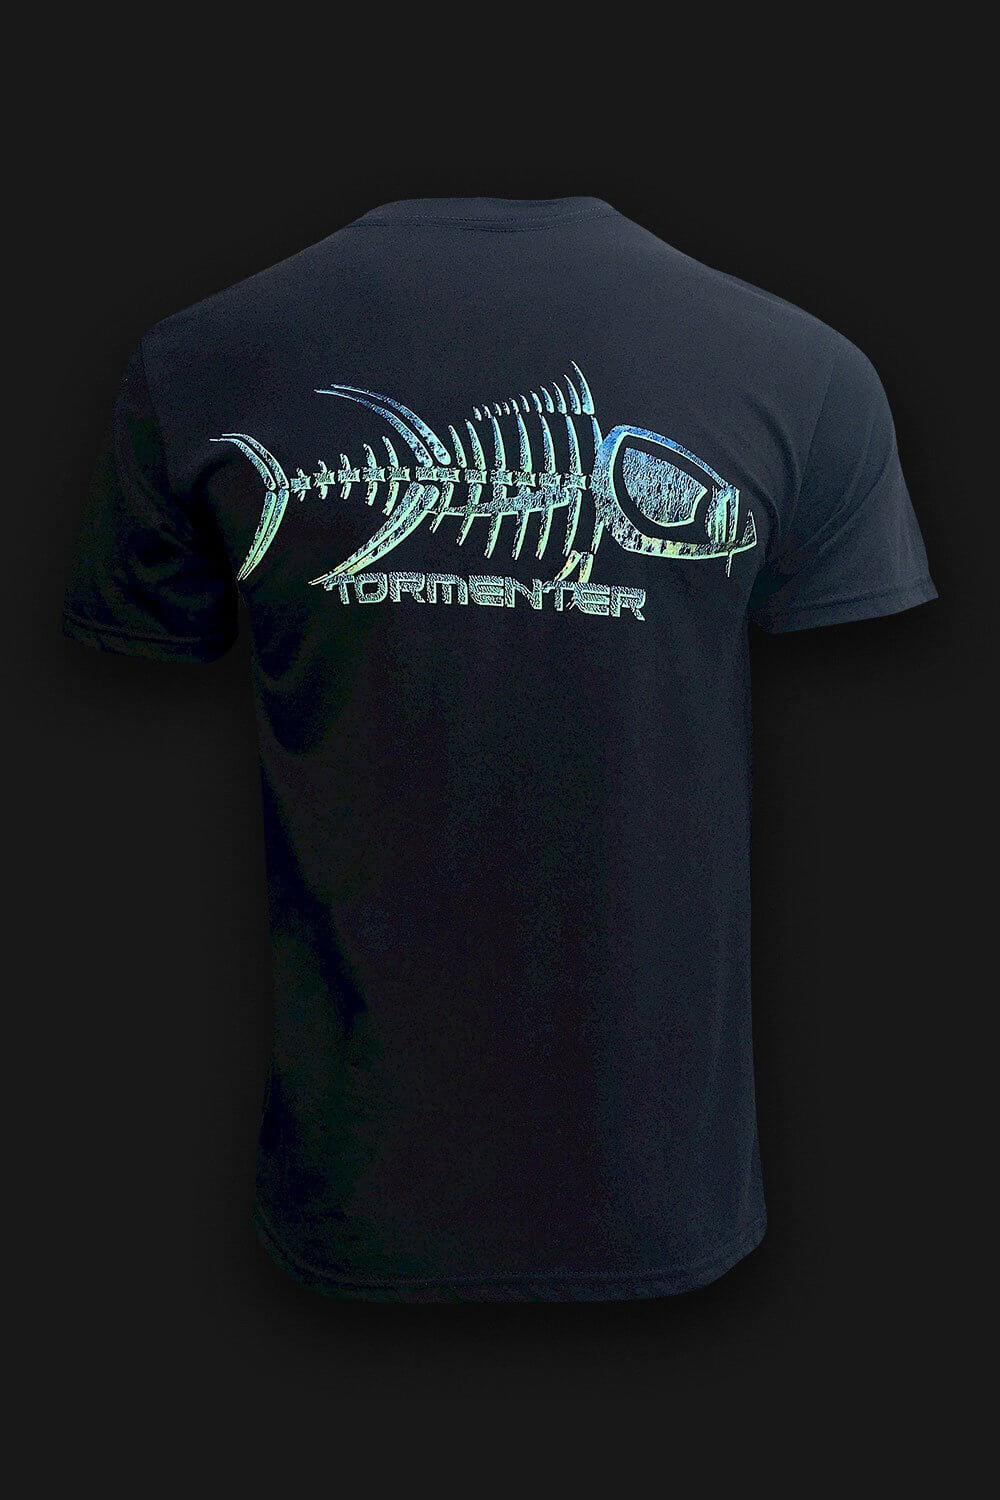 Mahi Skin Black Men’s Fishing T-Shirt, M